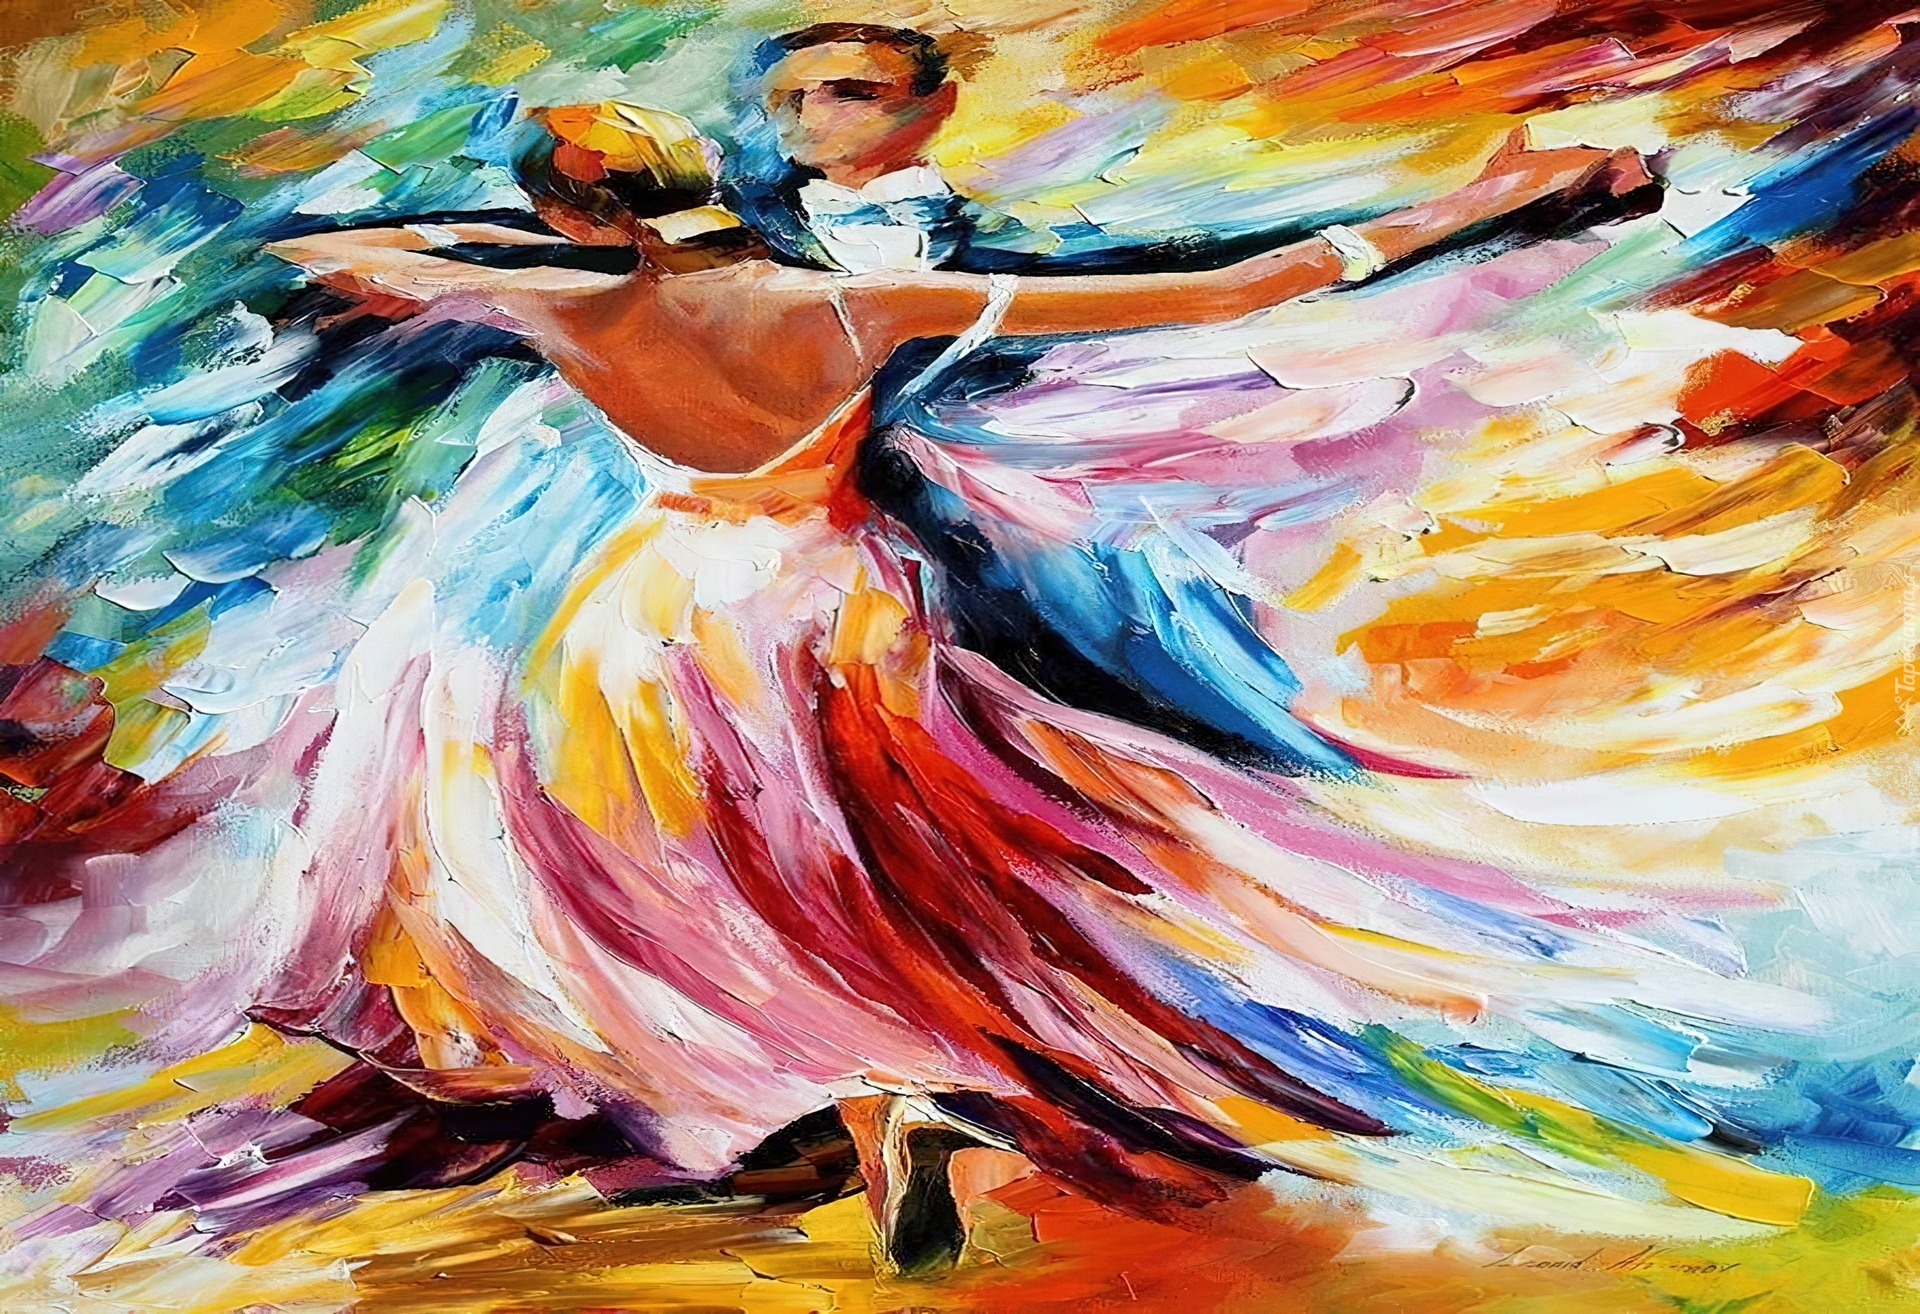 Tańcząca, Para, Leonid Afremov